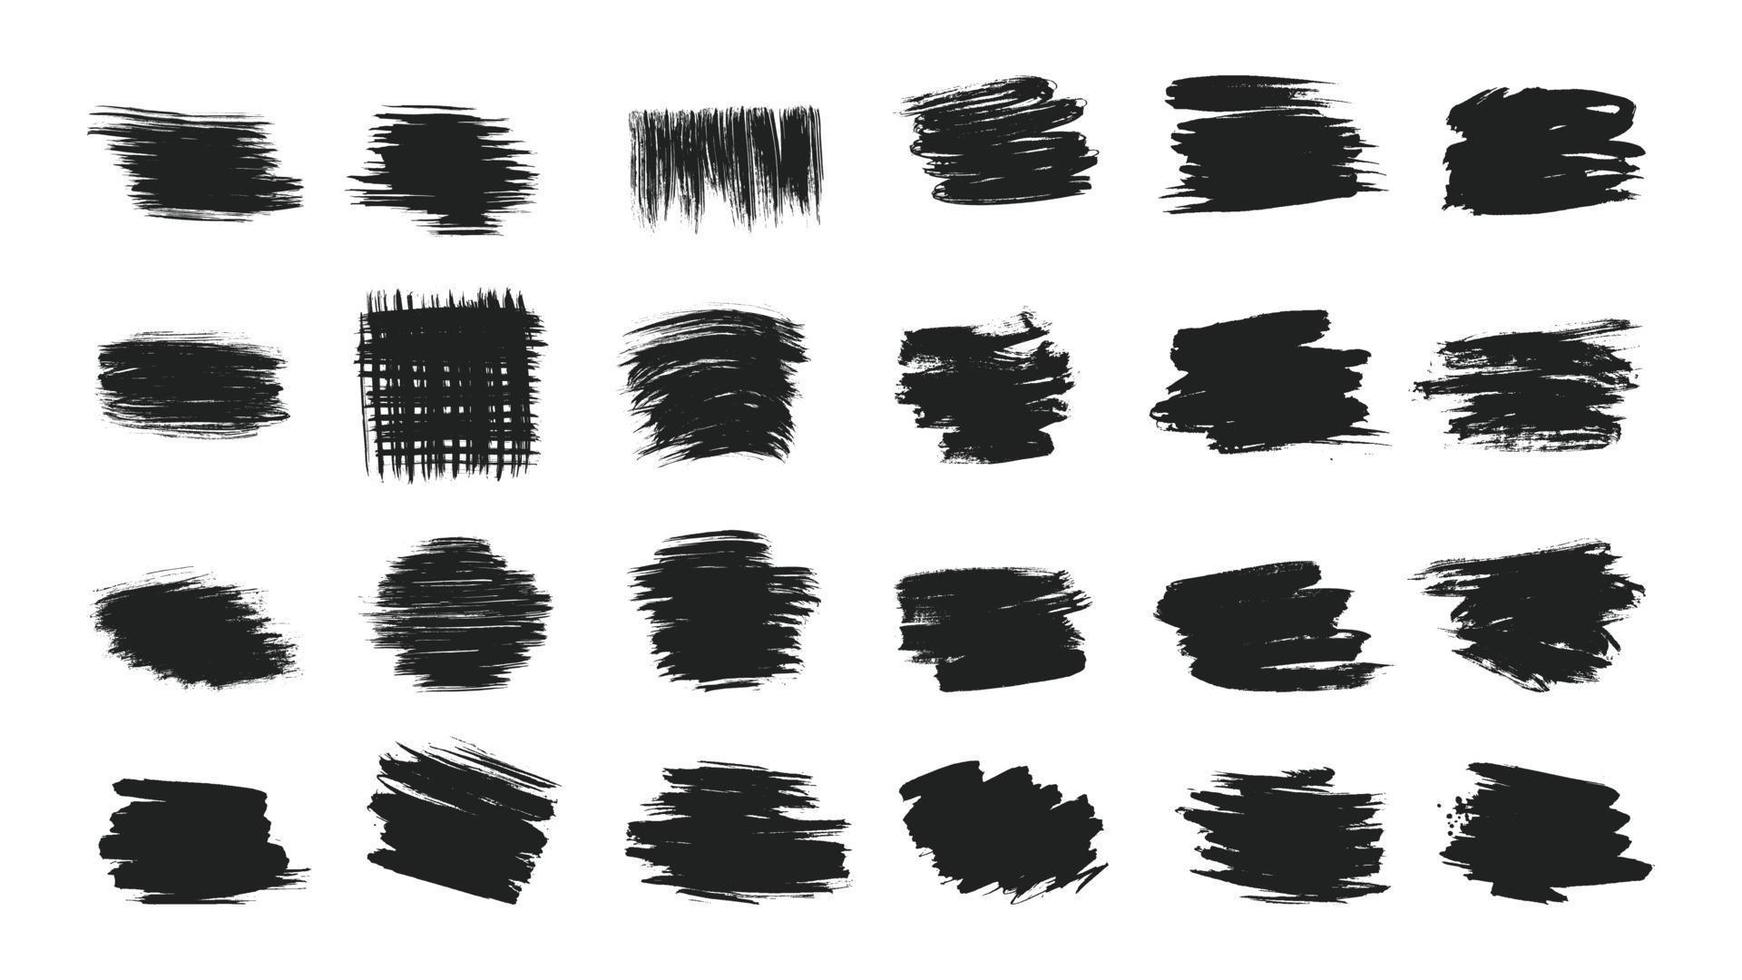 stor samling av handritad kalligrafi penseldrag svart färg textur set vektorillustration isolerad på vit bakgrund. kalligrafi penslar hög detalj abstrakta element. vektor